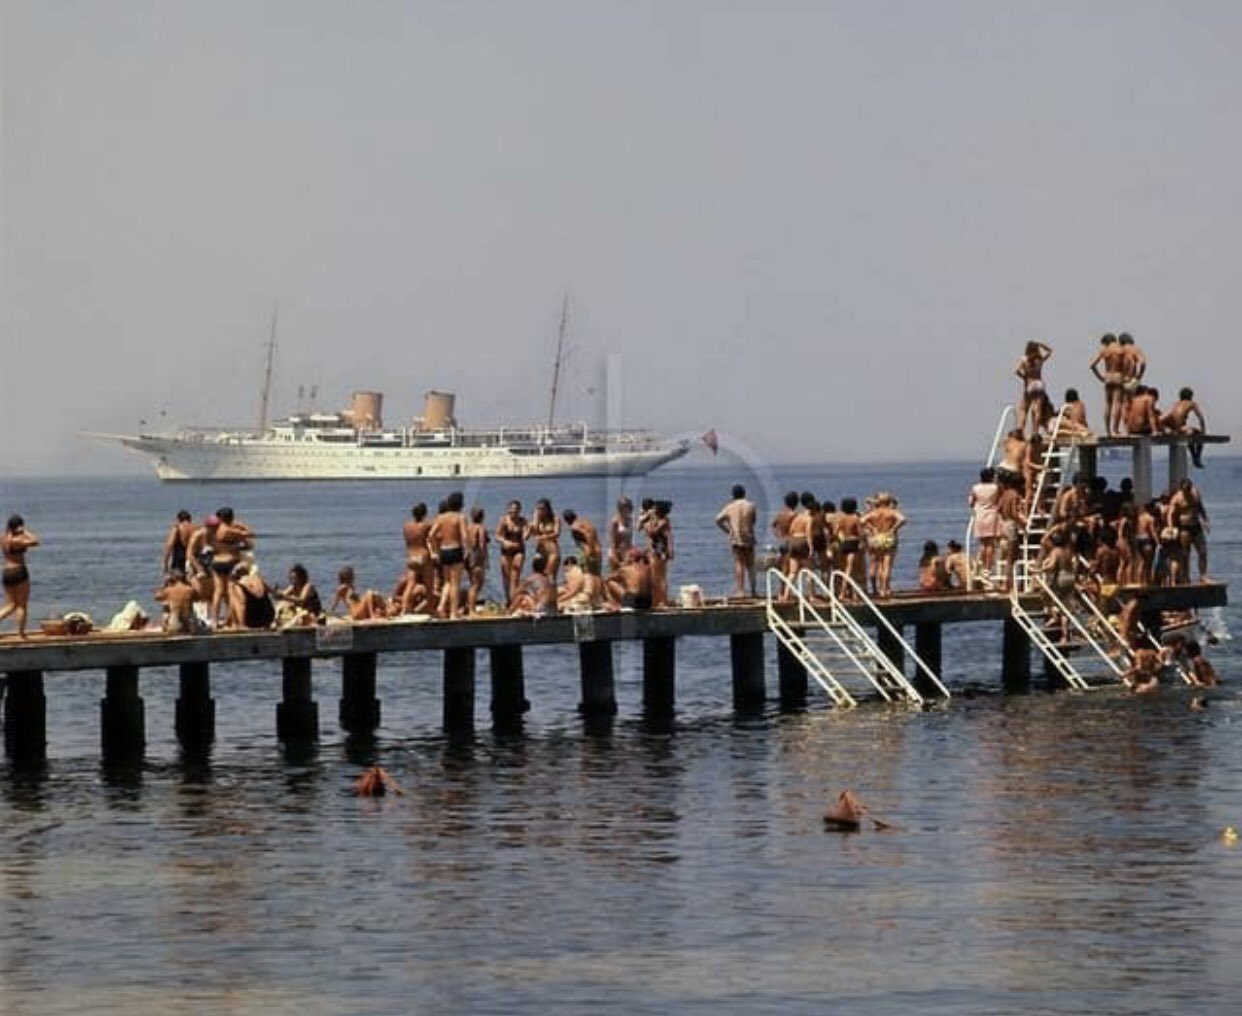 ESKİDEN İSTANBUL 🌙 on "Moda Plajı, fonda Savarona Yatı demirlemiş...70'ler https://t.co/Yn7uDeFp6v" Twitter